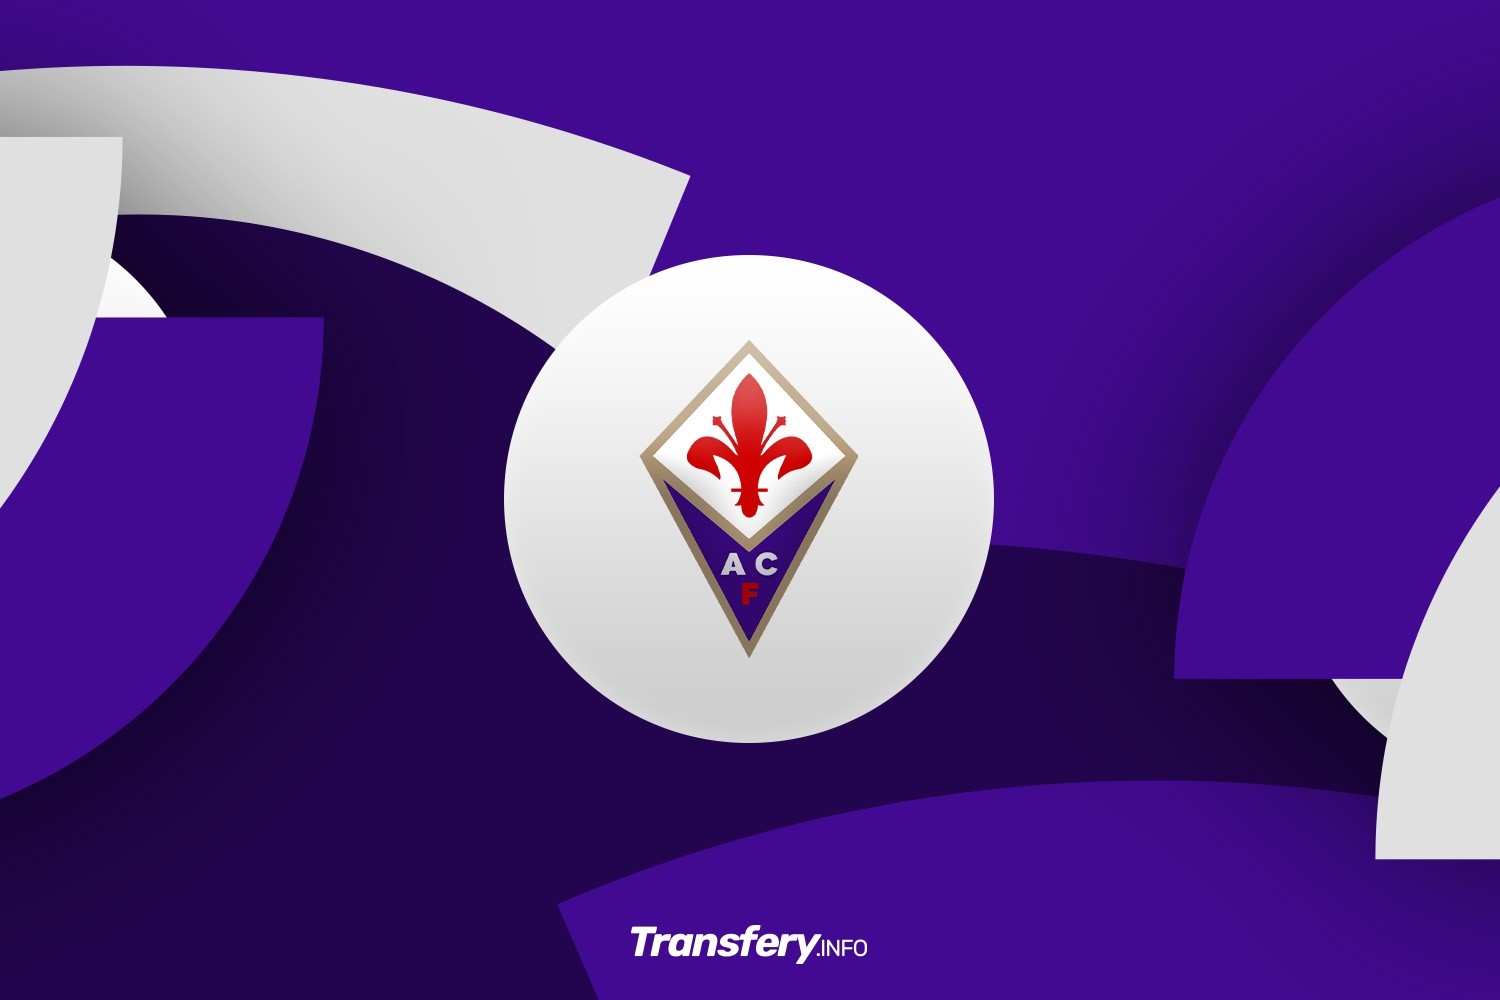 OFICJALNIE: Fiorentina sprowadziła do siebie argentyński talent